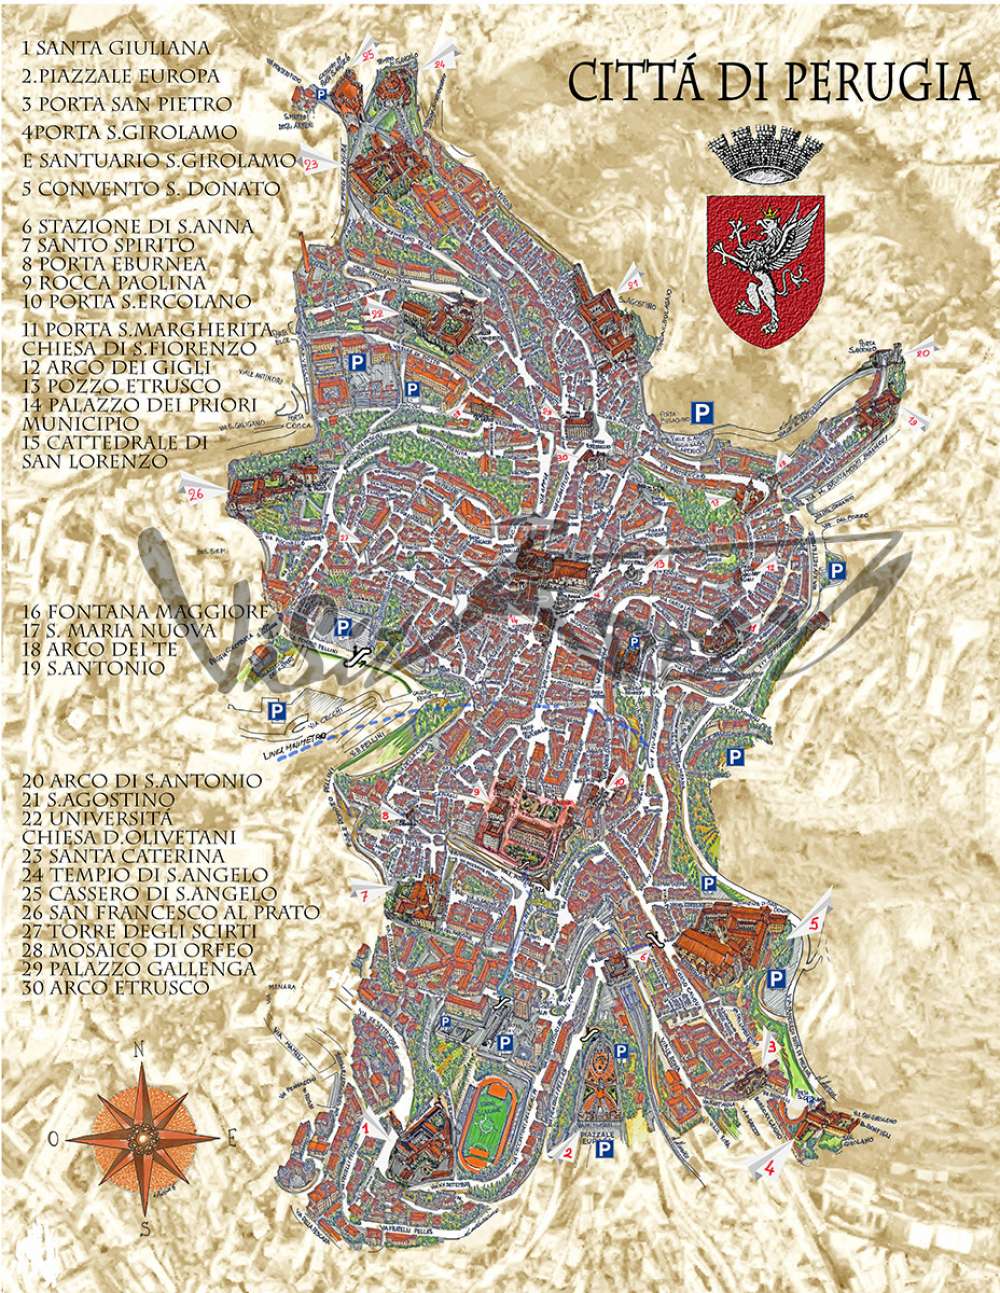 Cartina e mappa turistica del centro storico di Perugia. Mappa disegnata a volo d’uccello